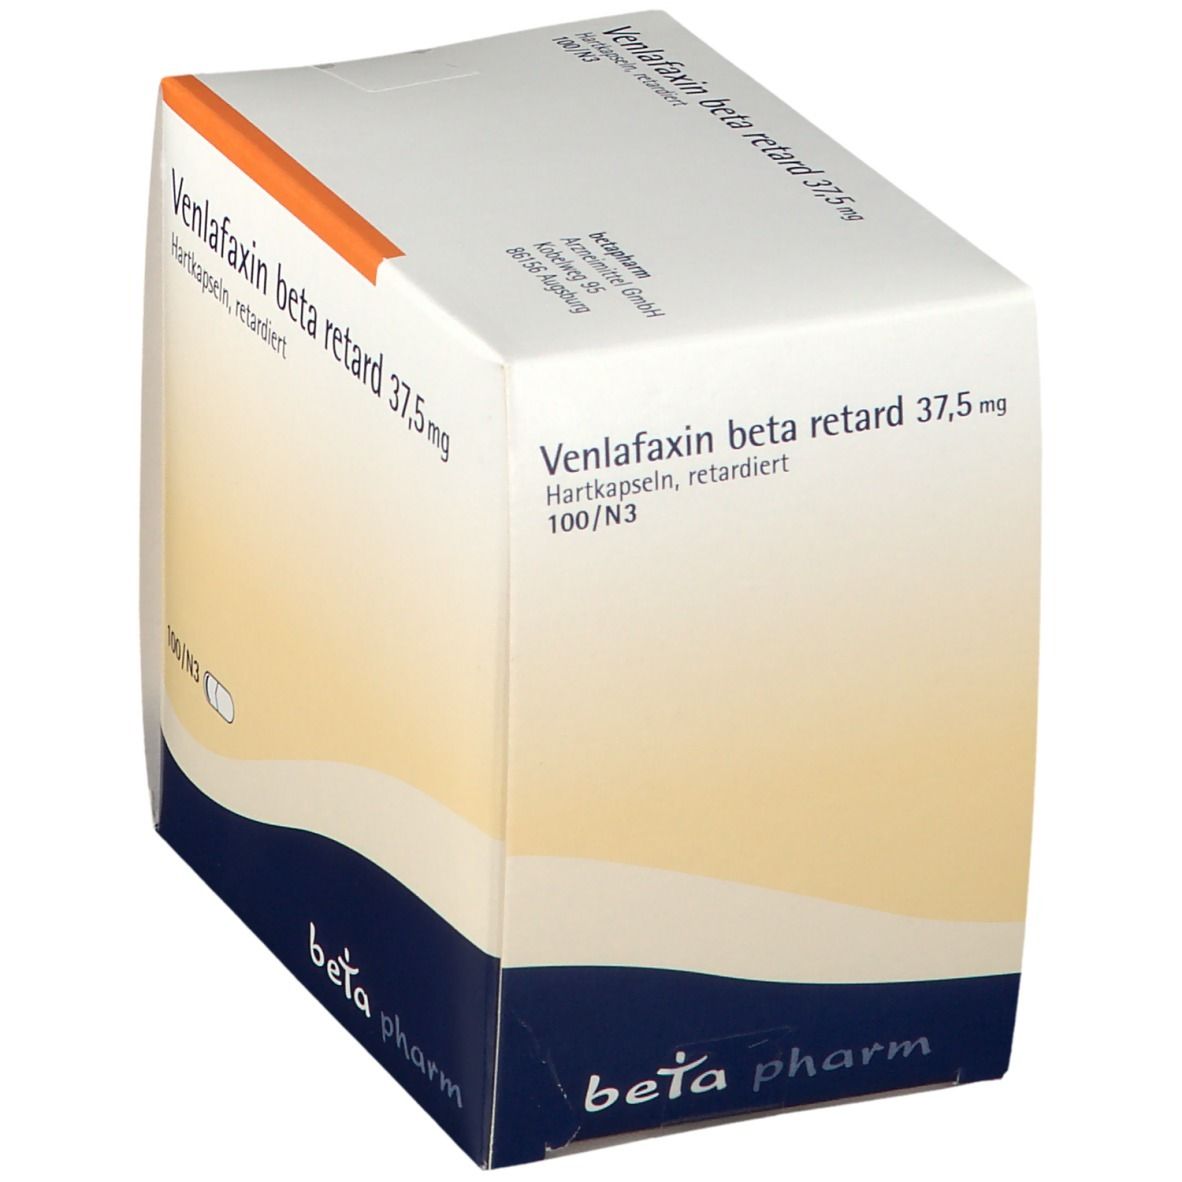 Venlafaxin beta retard 37,5 mg